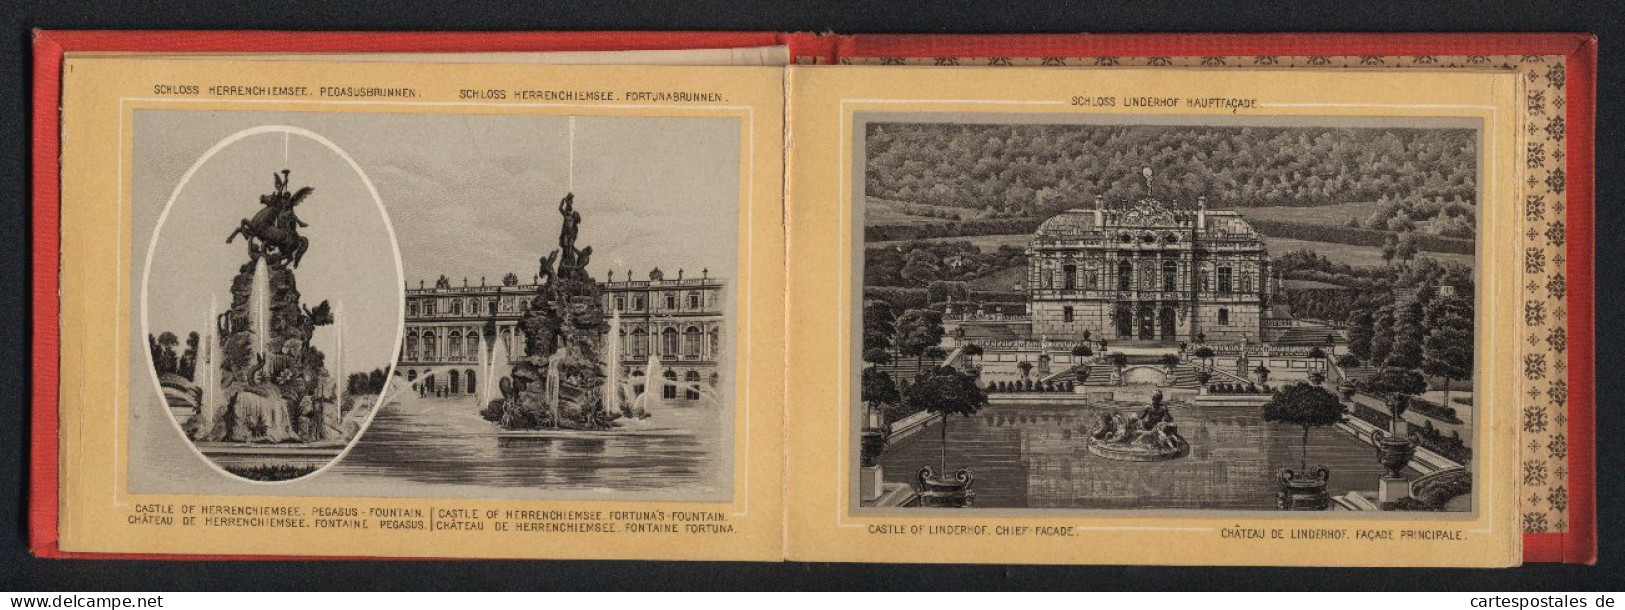 Leporello-Album Lieblingsschlösser König Ludwig II. Mit 17 Lithographie-Ansichten, Linderhof, Kiosk, Neuschwanstein,  - Lithografieën